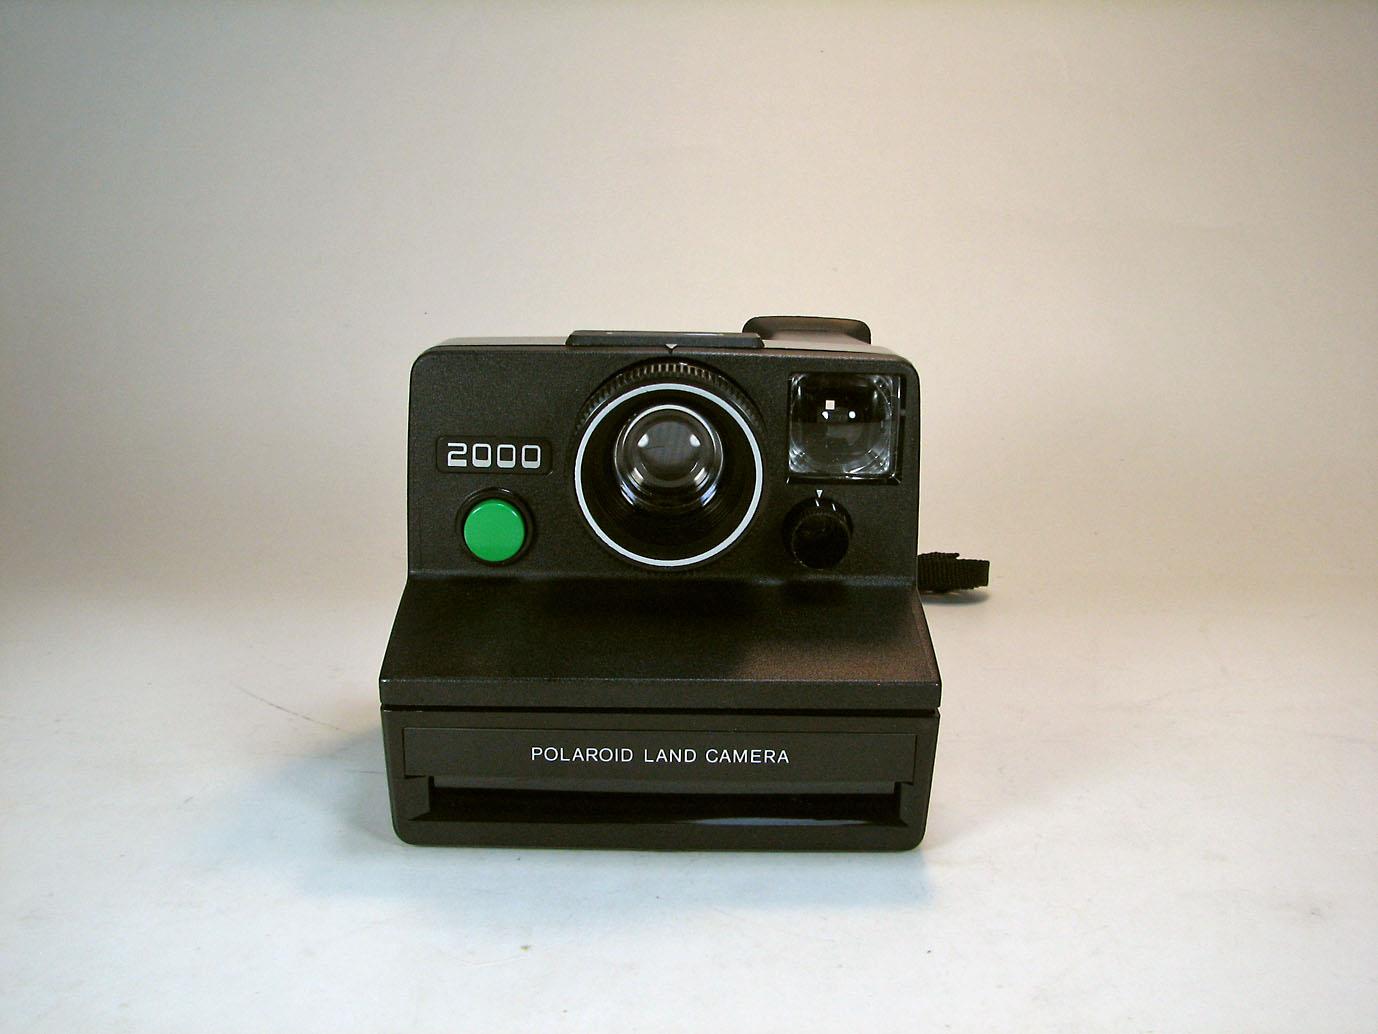 دوربین کلکسیونی پلاروید Polaroid 2000 همراه با کارتن فابریک